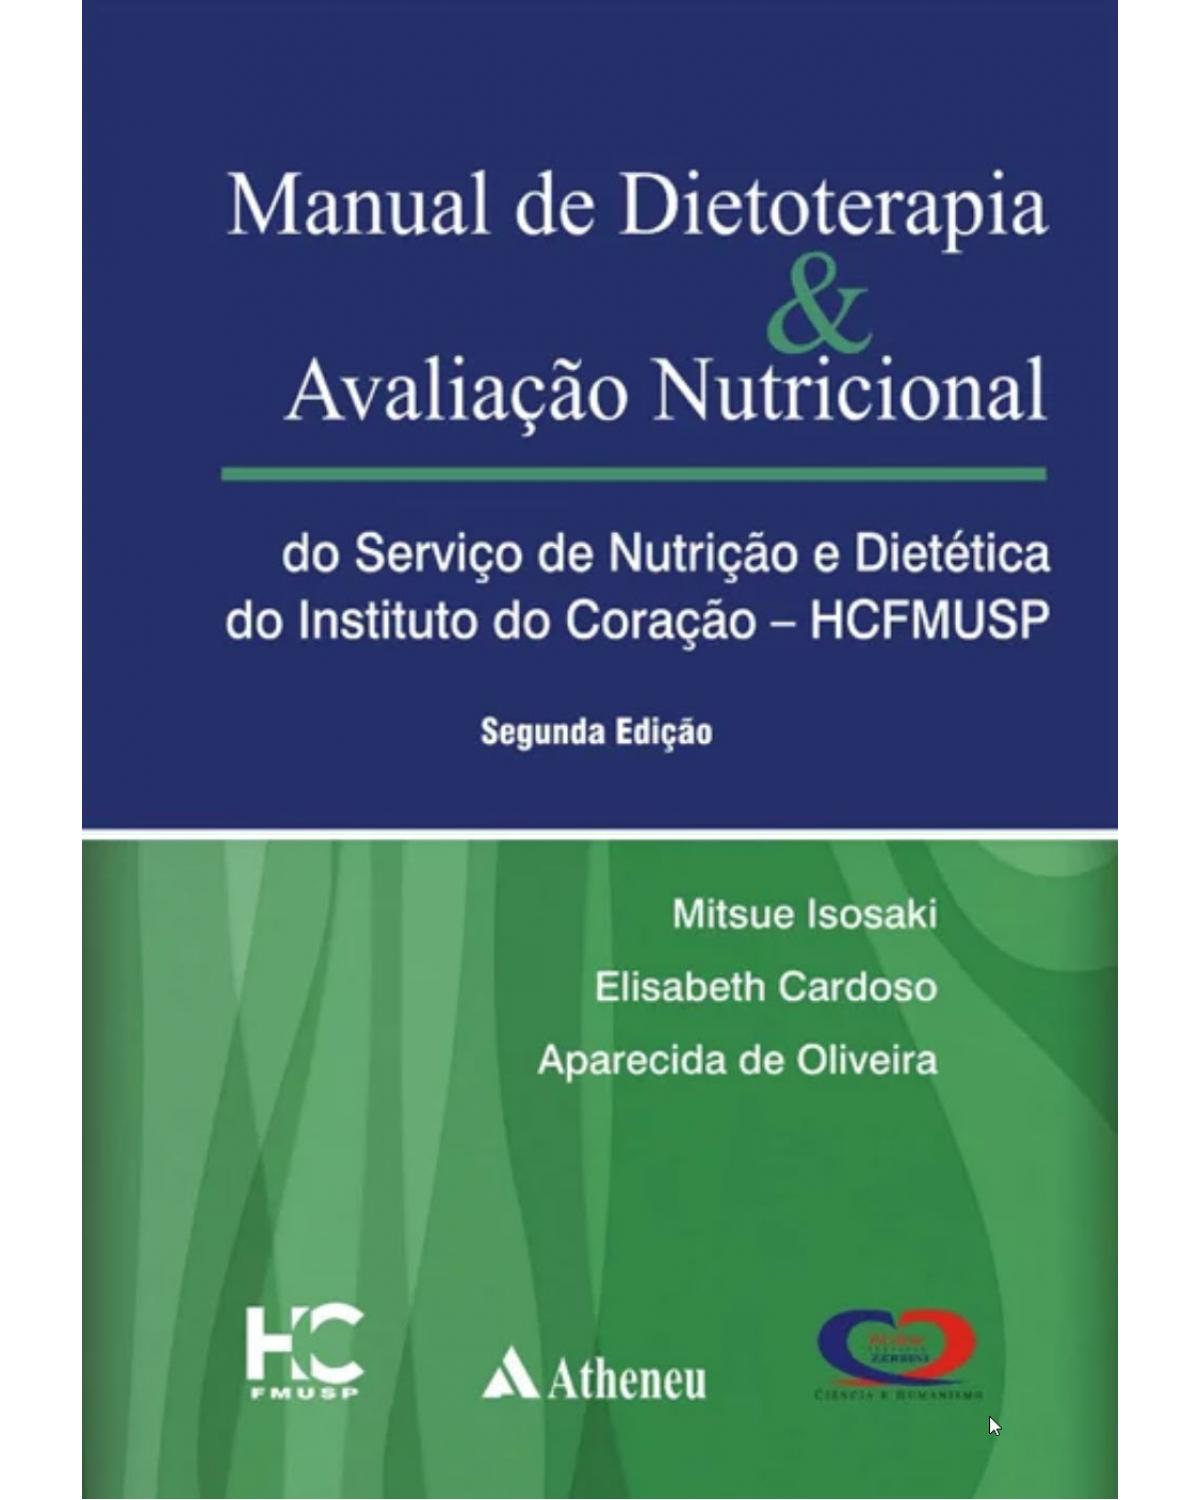 Manual de dietoterapia e avaliação nutricional - 2ª Edição | 2009